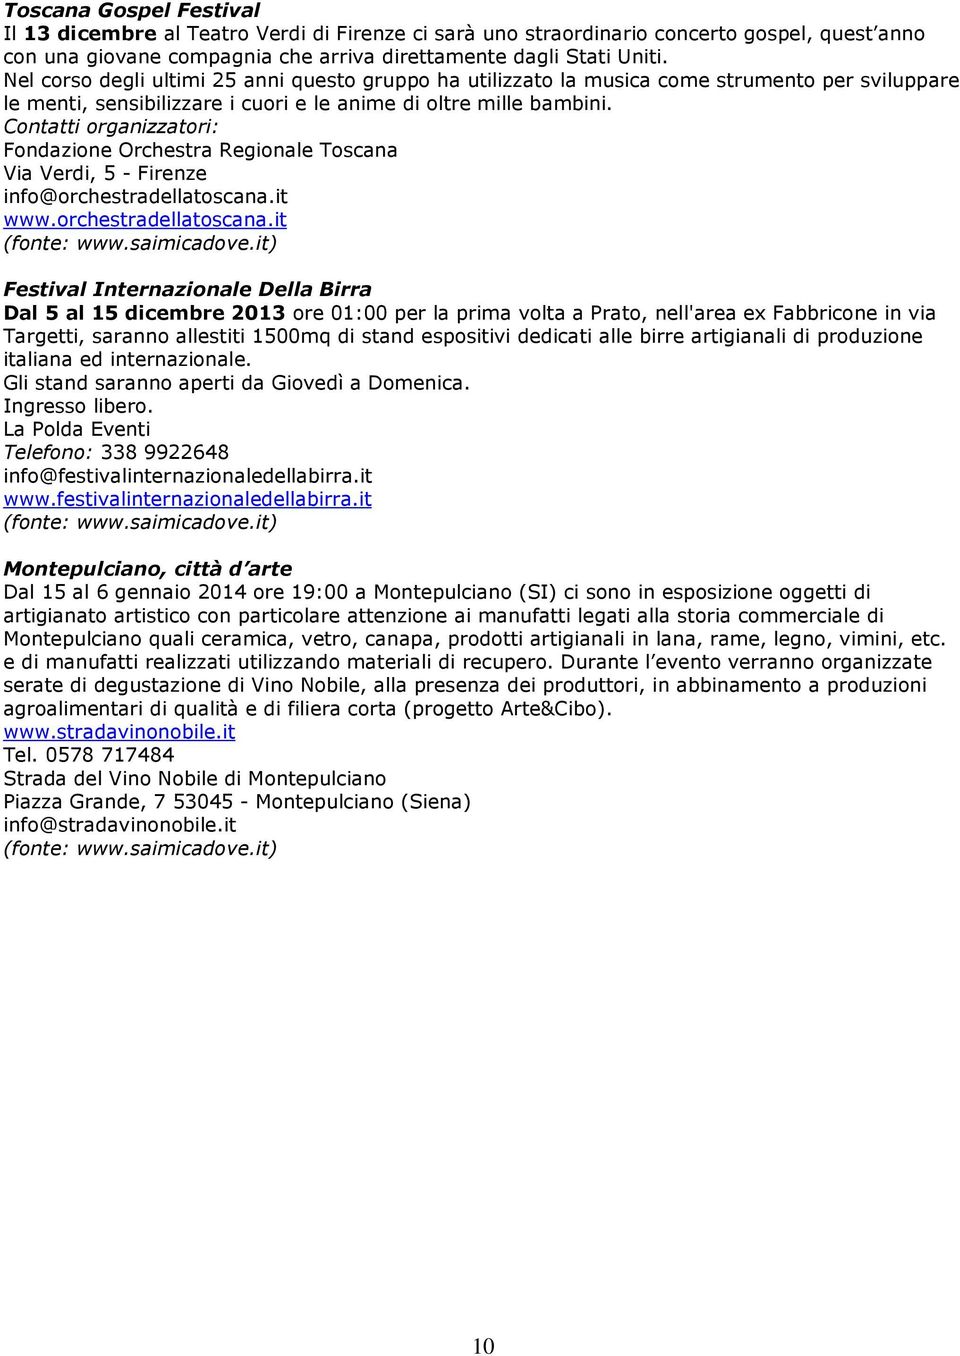 Contatti organizzatori: Fondazione Orchestra Regionale Toscana Via Verdi, 5 - Firenze info@orchestradellatoscana.it www.orchestradellatoscana.it (fonte: www.saimicadove.